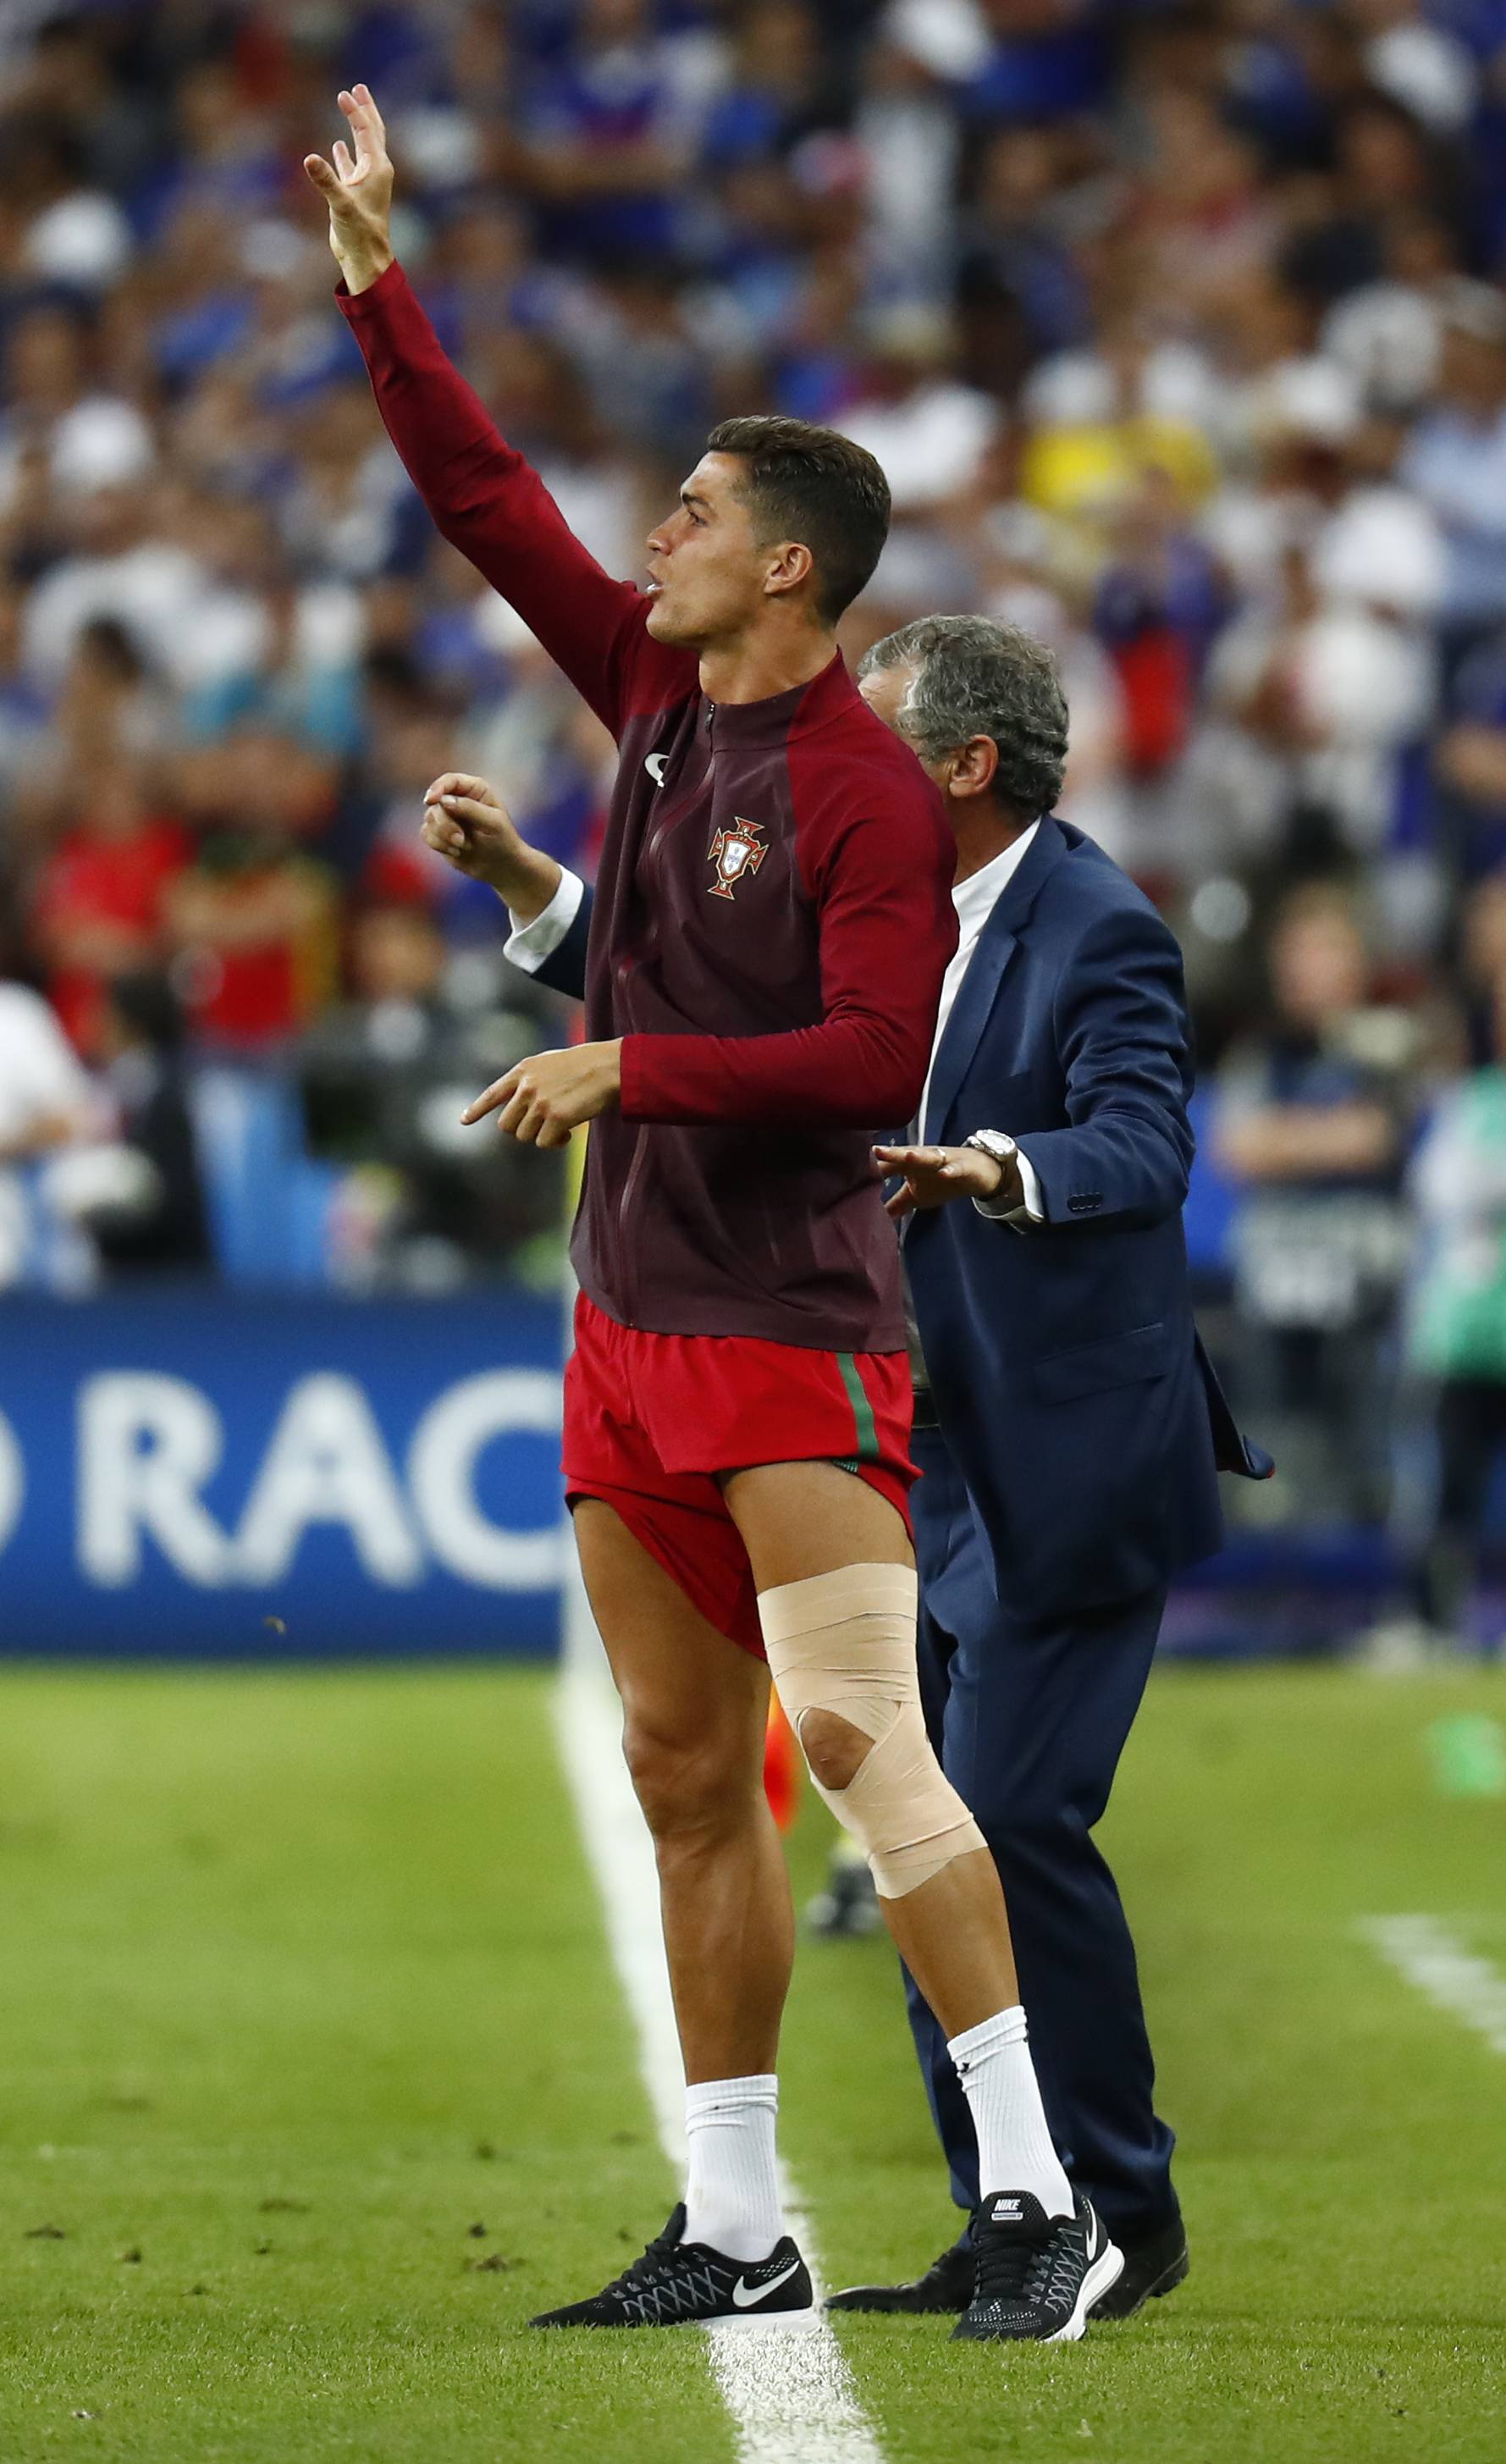 Portugal v France - EURO 2016 - Final